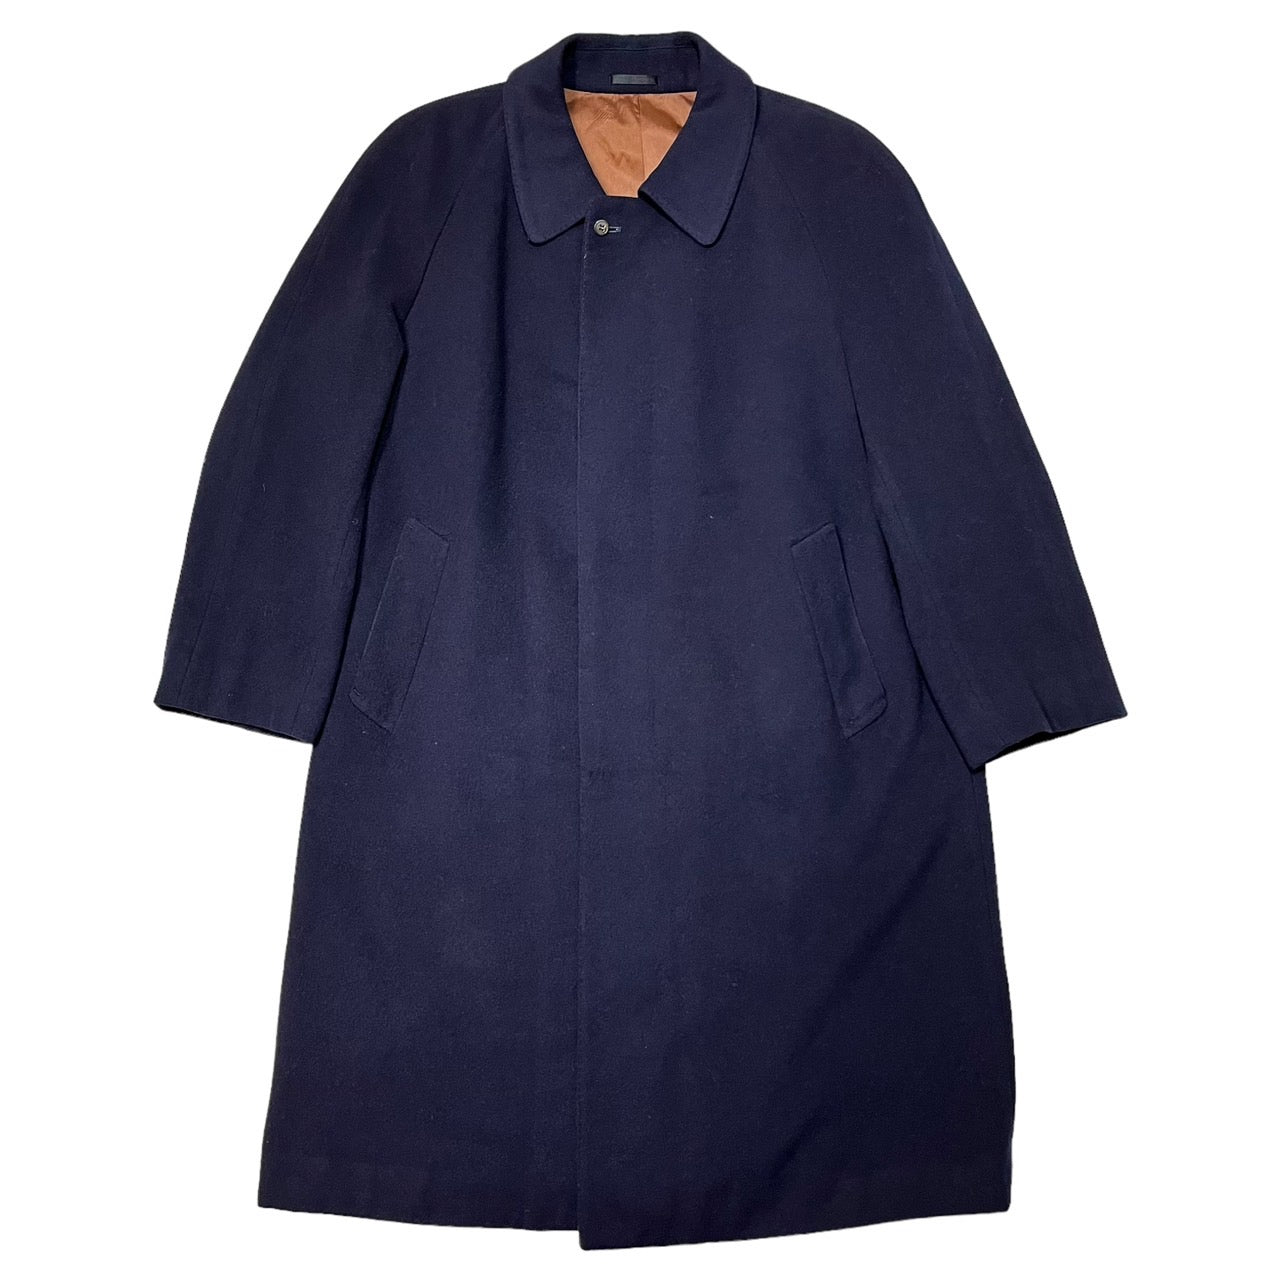 LANVIN(ランバン) 90~00's Cashmere blend wool coat with stainless steel collar/カシミヤ混ウールステンカラーコート SIZE表記無し(L程度) ネイビー